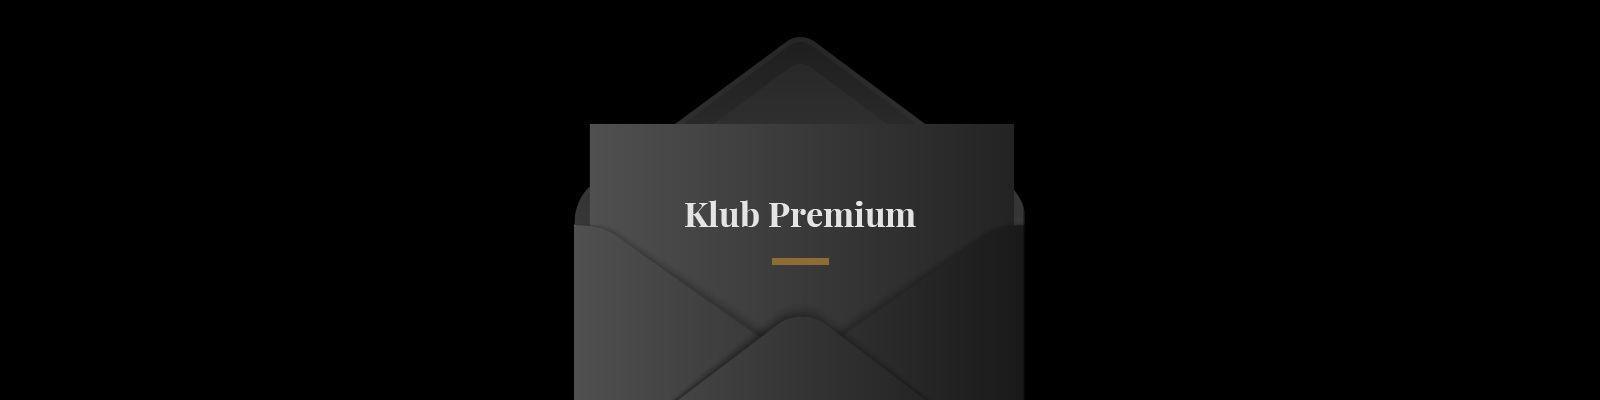 Klub Premium Fabryki Zegarków